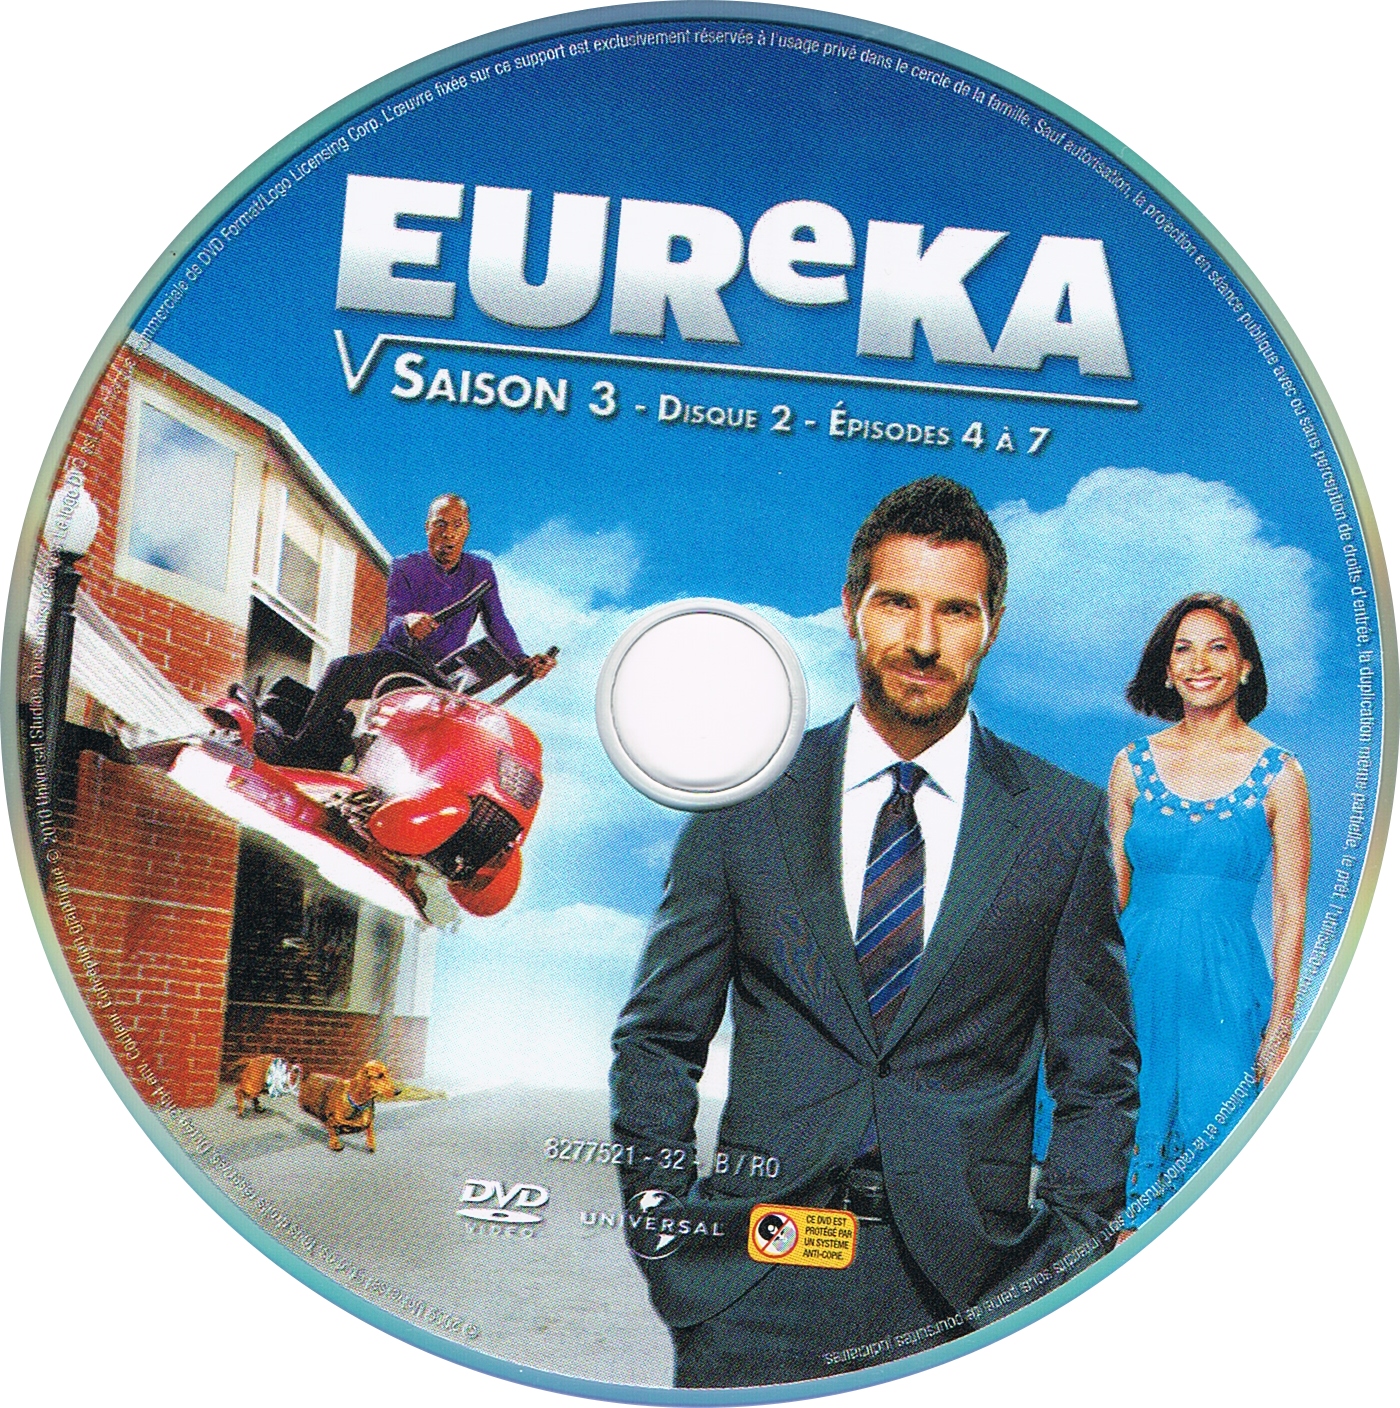 Eureka saison 3 DISC 2